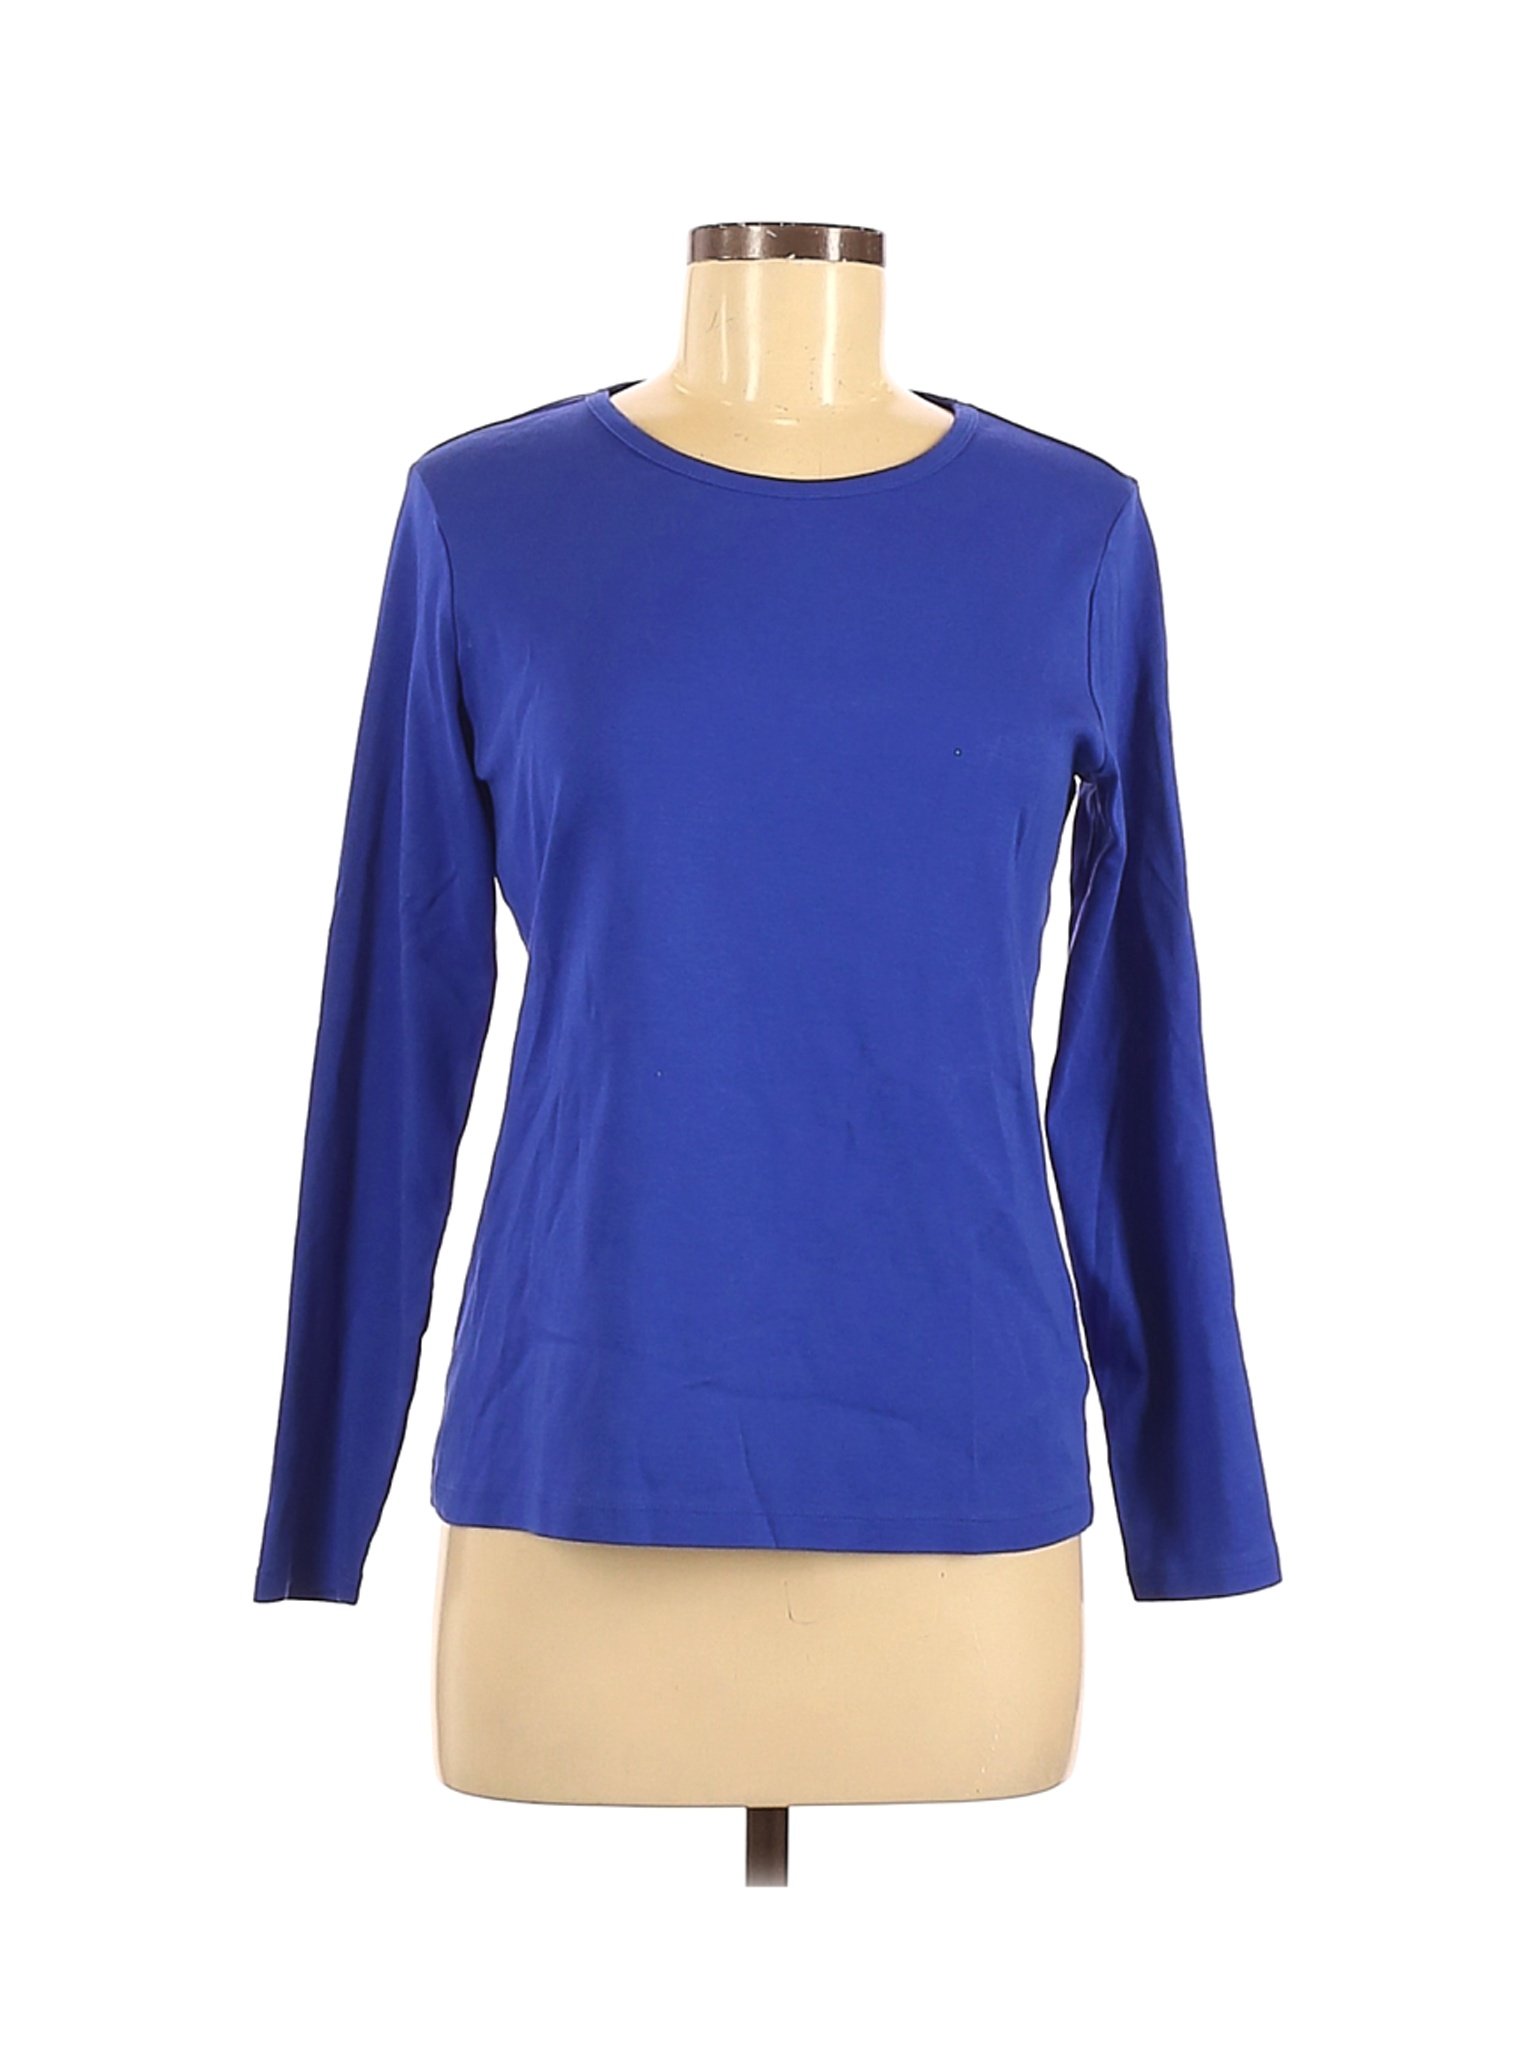 Lands' End Women Blue Long Sleeve T-Shirt M | eBay